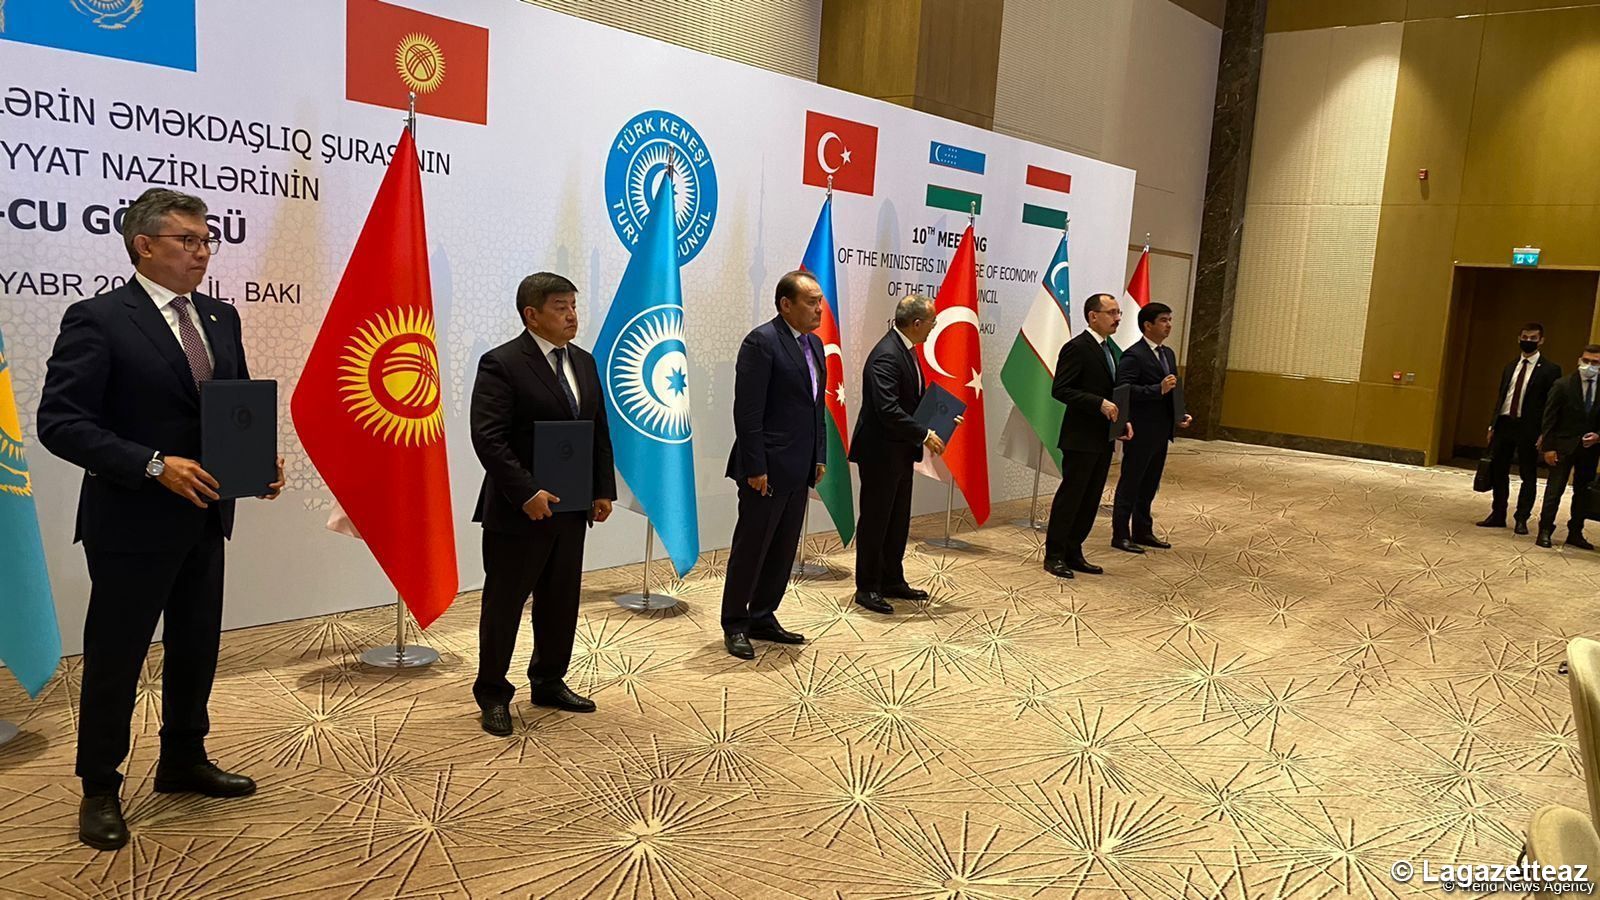 Bakou accueille la cérémonie de signature d'accords commerciaux et économiques entre les États turcophones